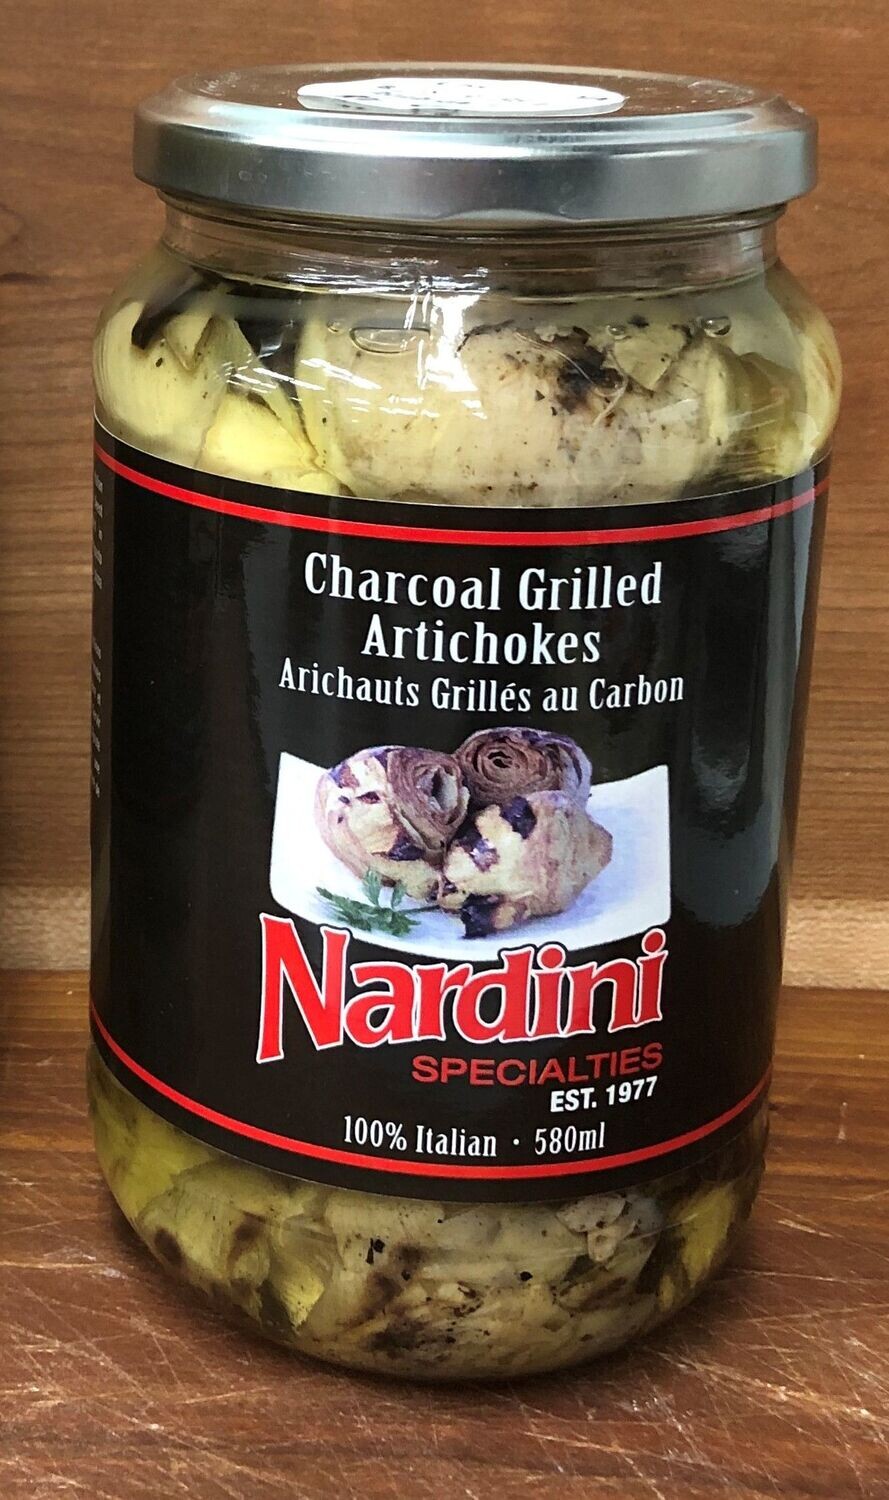 Charcoal Grilled Artichokes - Nardini Private Label